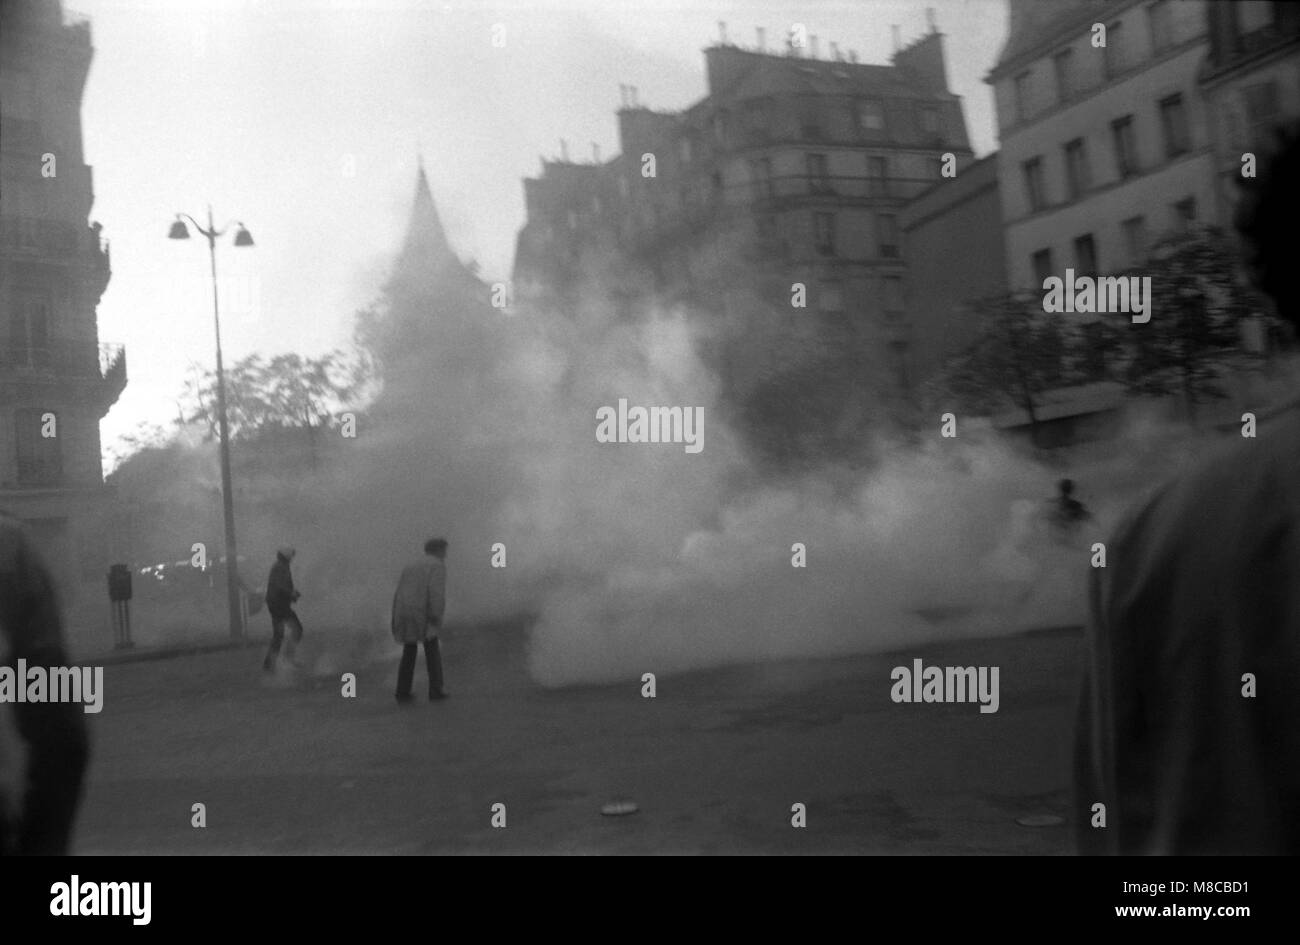 Philippe Gras / Le Pictorium - Maggio 1698 - 1968 - Francia / Ile-de-France (Regione) / Parigi - gas lacrimogeni contro i marciapiedi nelle strade di Parigi Foto Stock